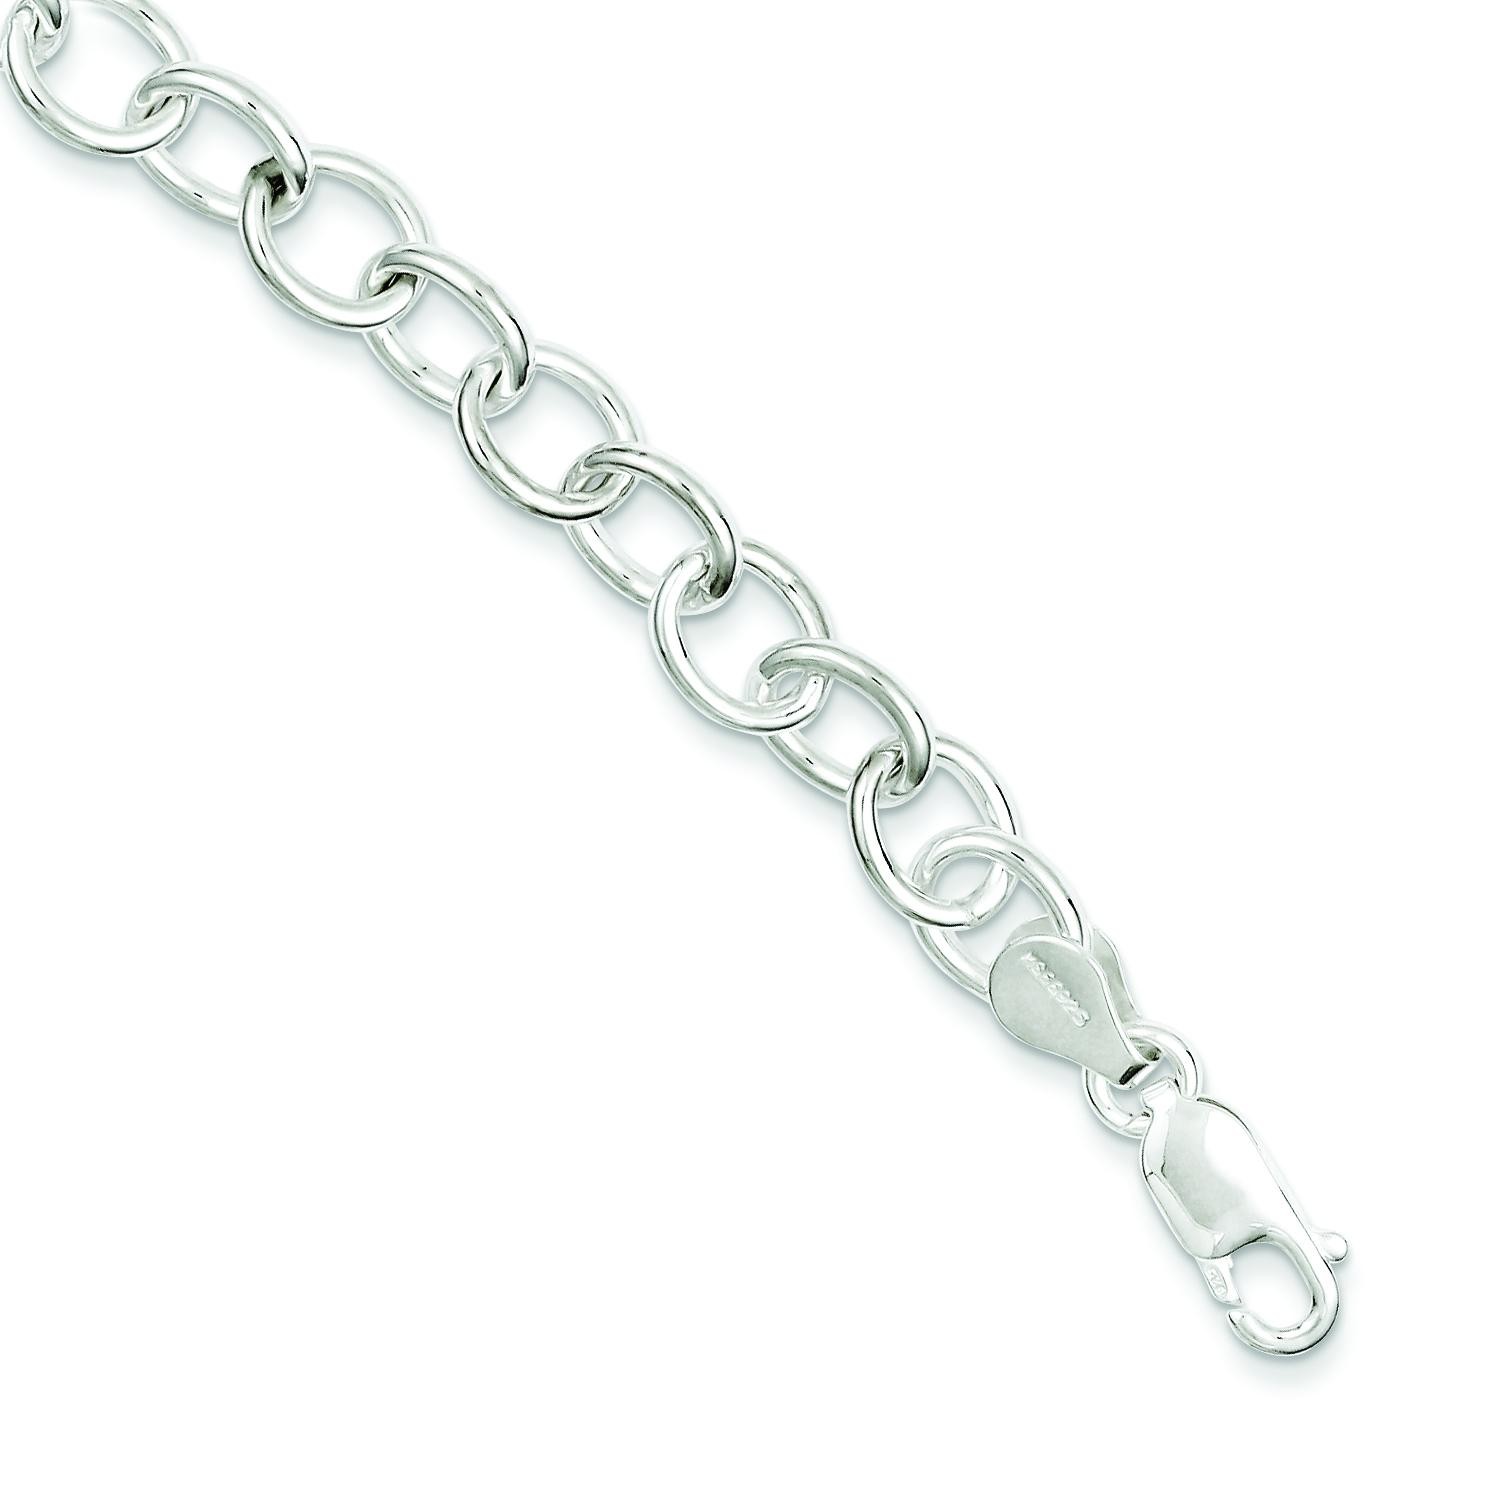 Fancy Open Link Bracelet in Sterling Silver